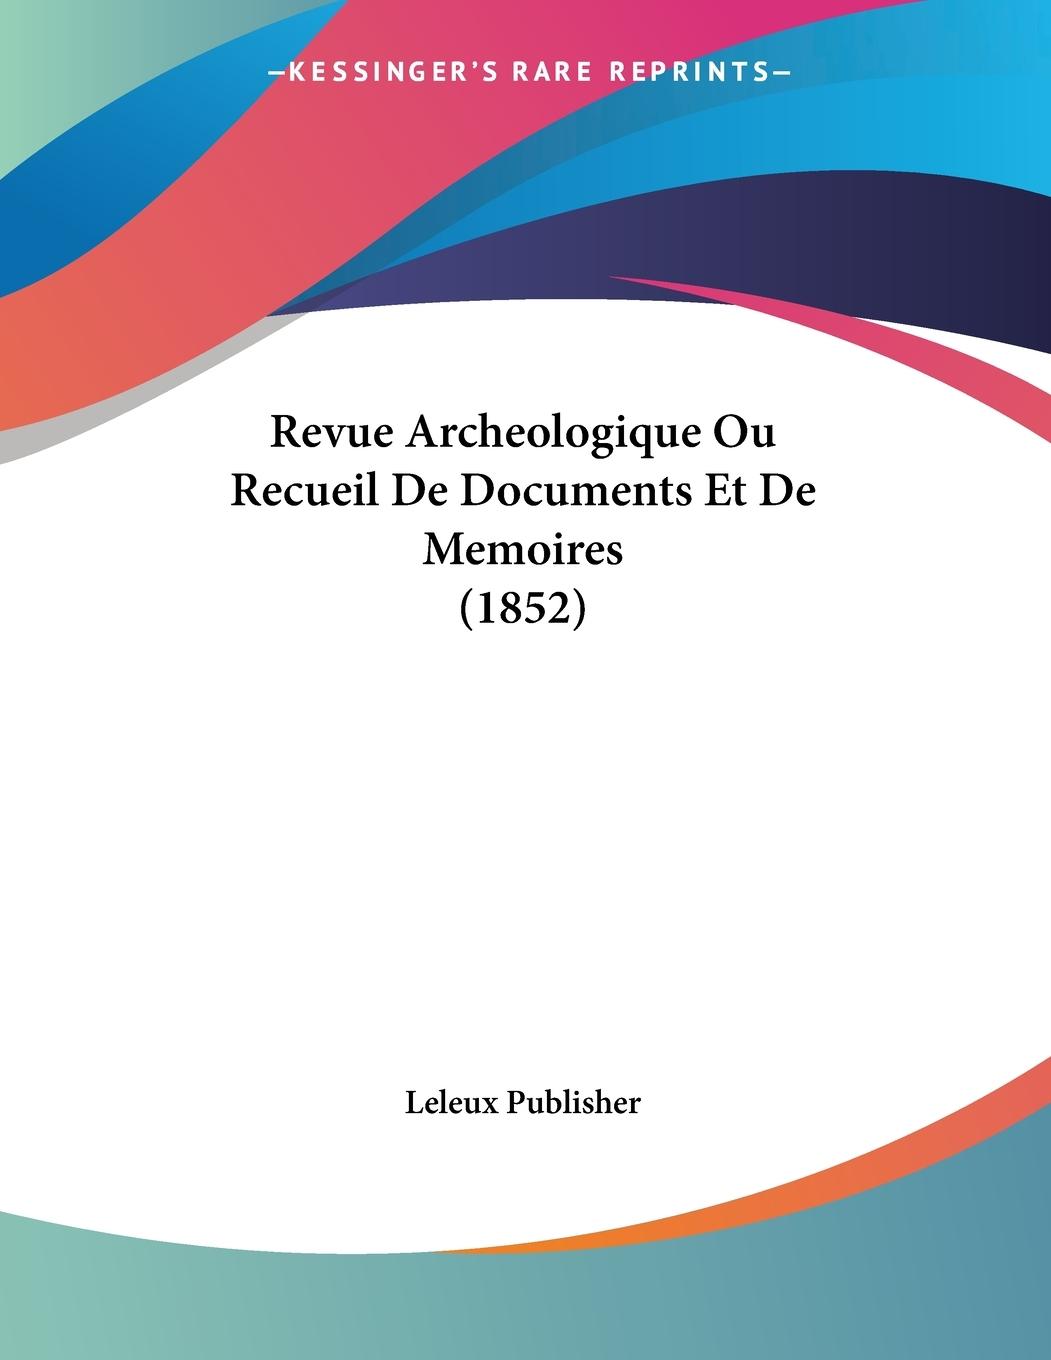 Revue Archeologique Ou Recueil De Documents Et De Memoires (1852) - Leleux Publisher